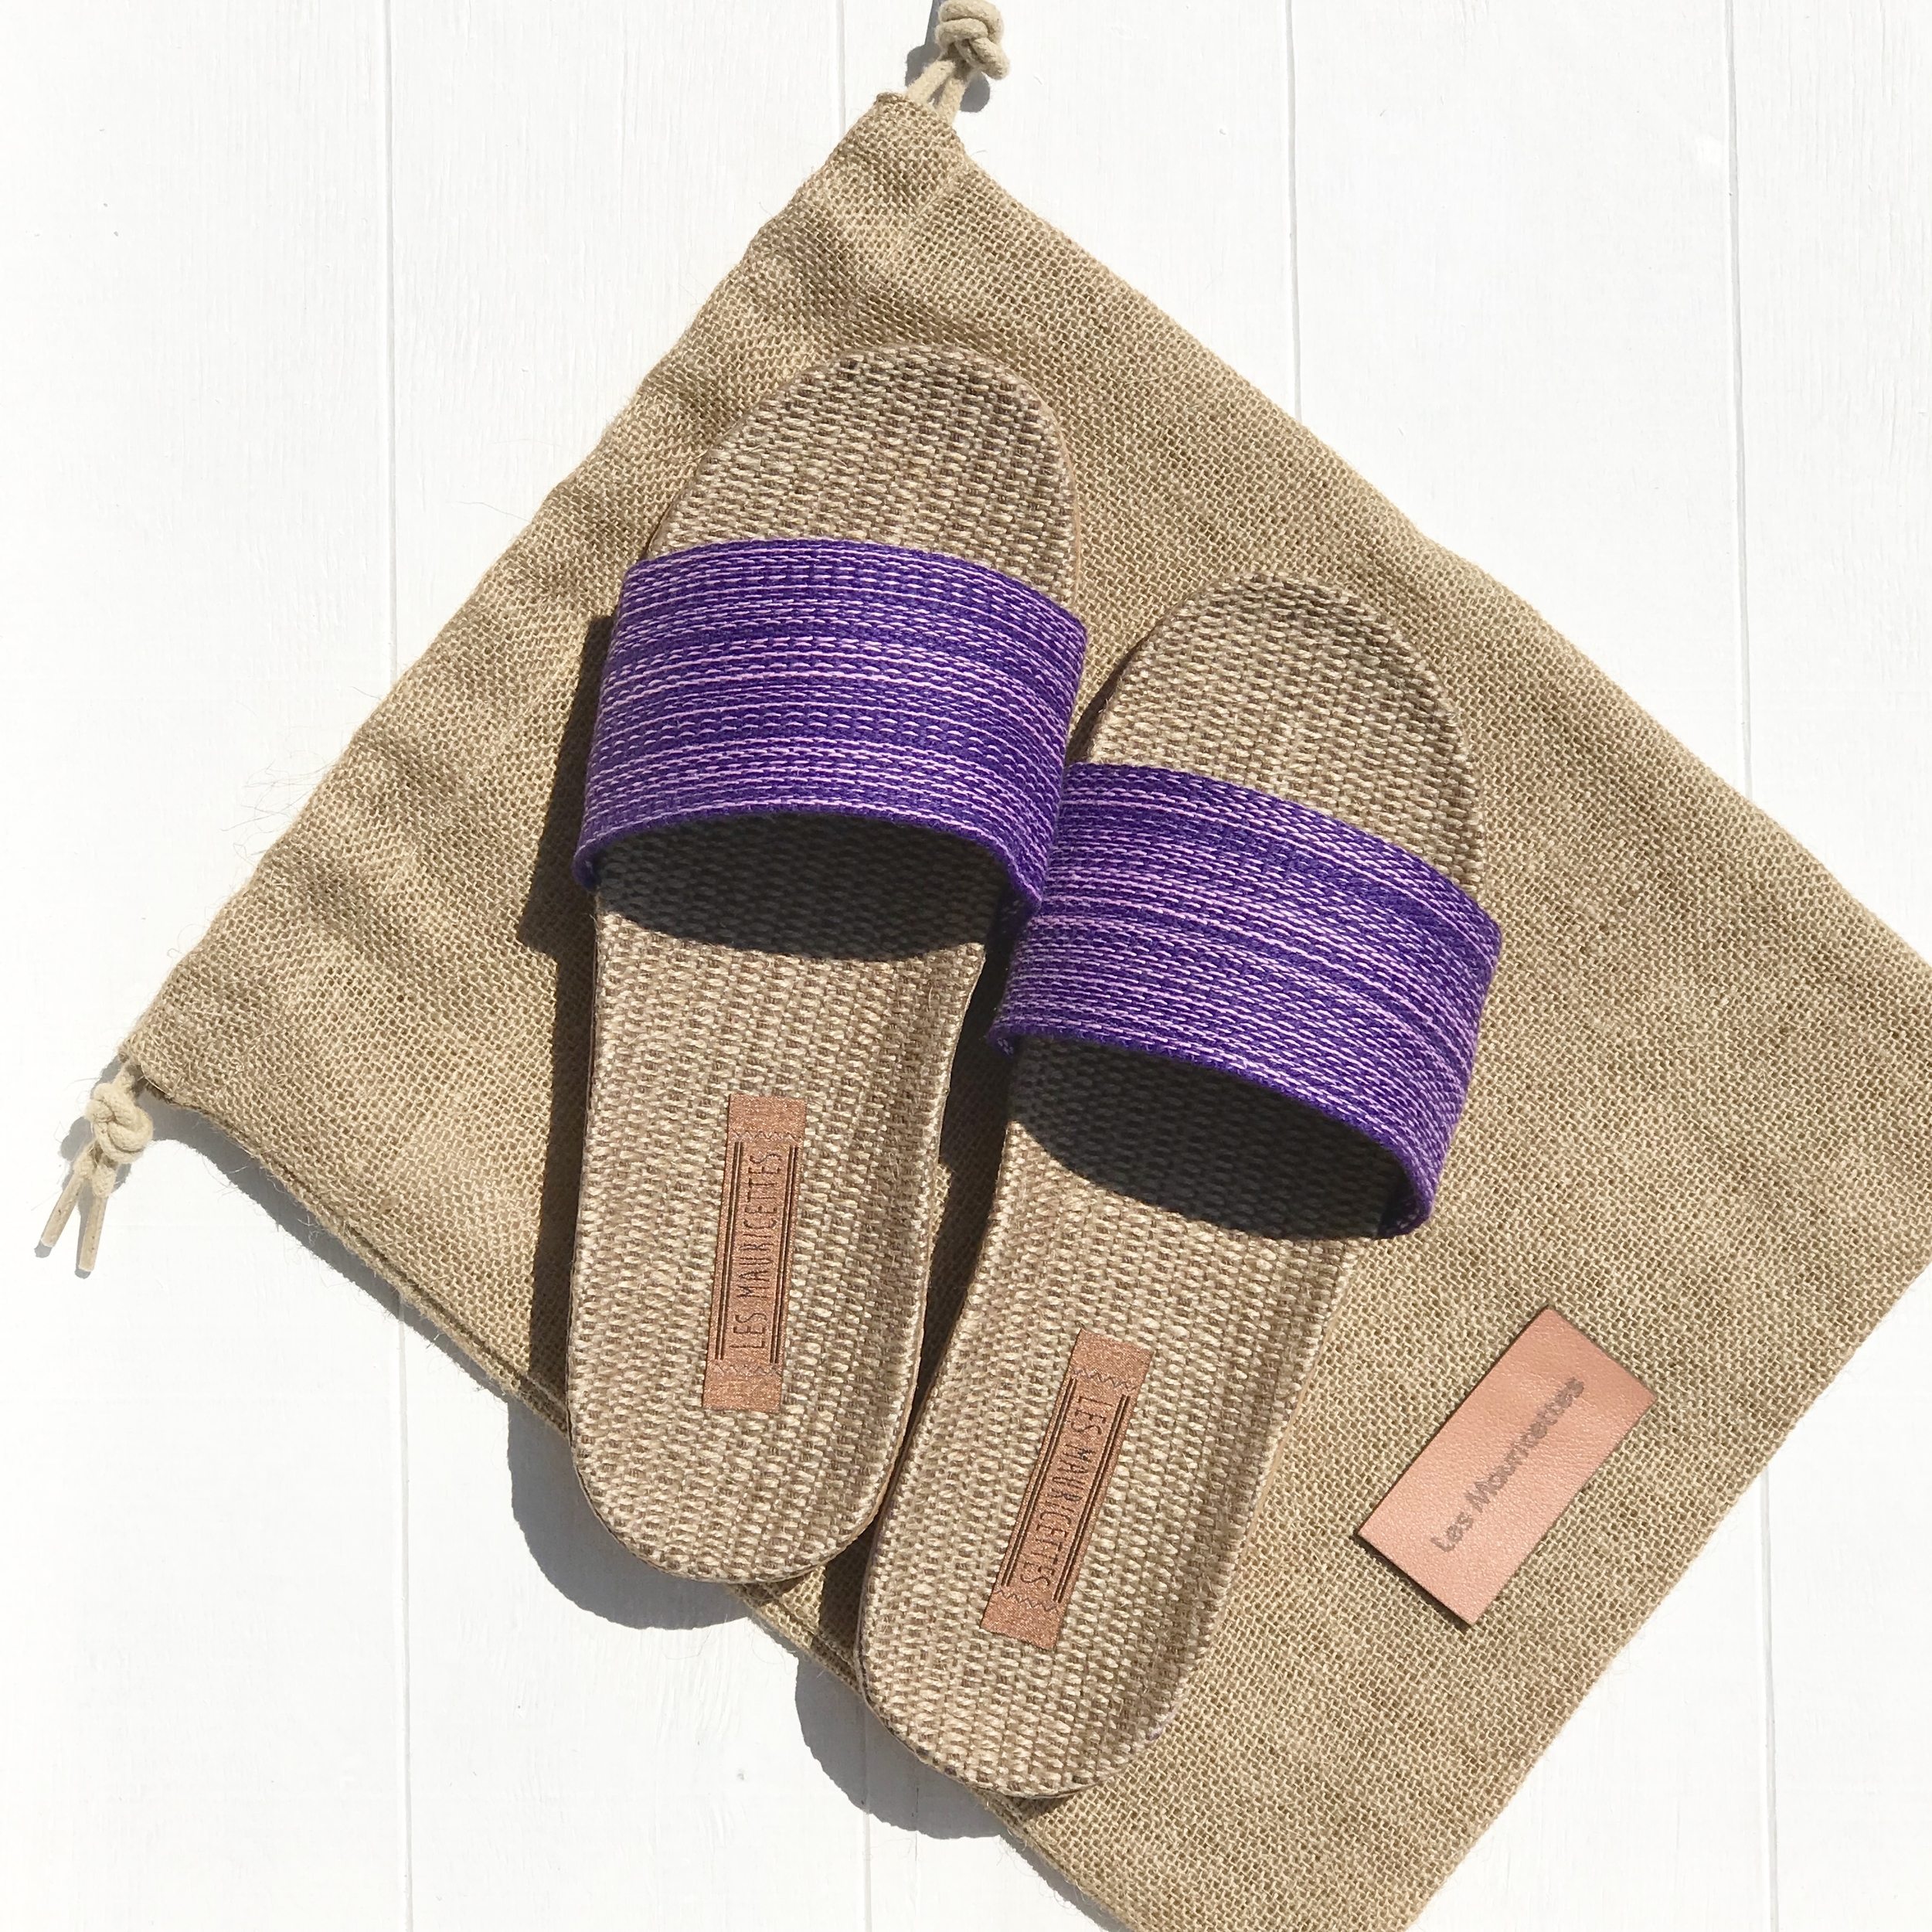 Les Mauricettes de Sidonie sandalettes plage et vacances légères violette